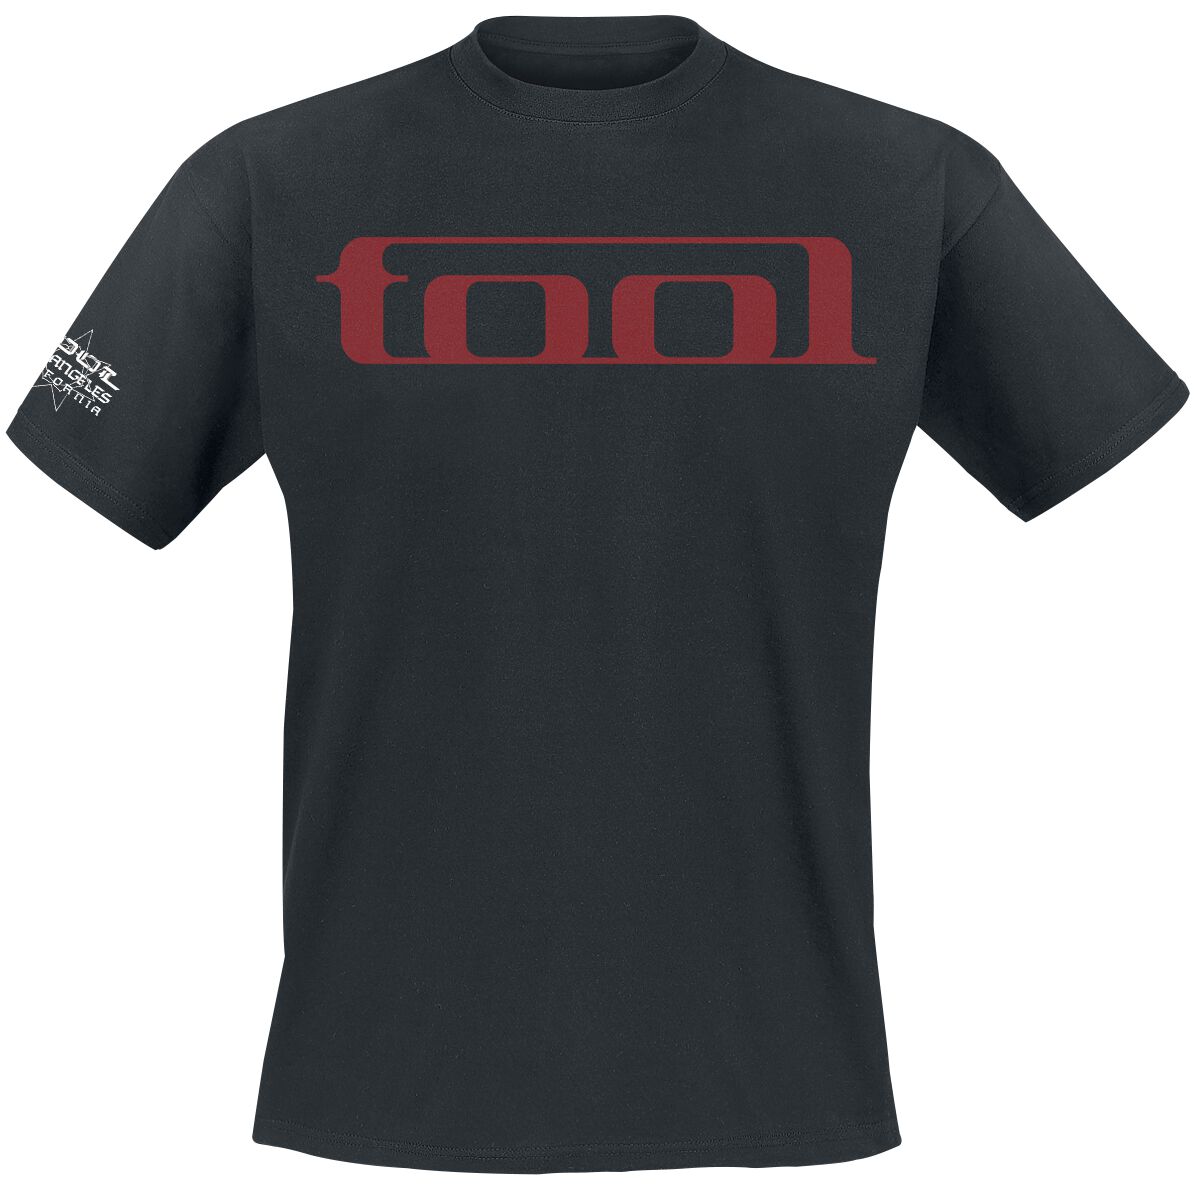 Tool T-Shirt - Undertow - S bis XXL - für Männer - Größe M - schwarz  - Lizenziertes Merchandise!